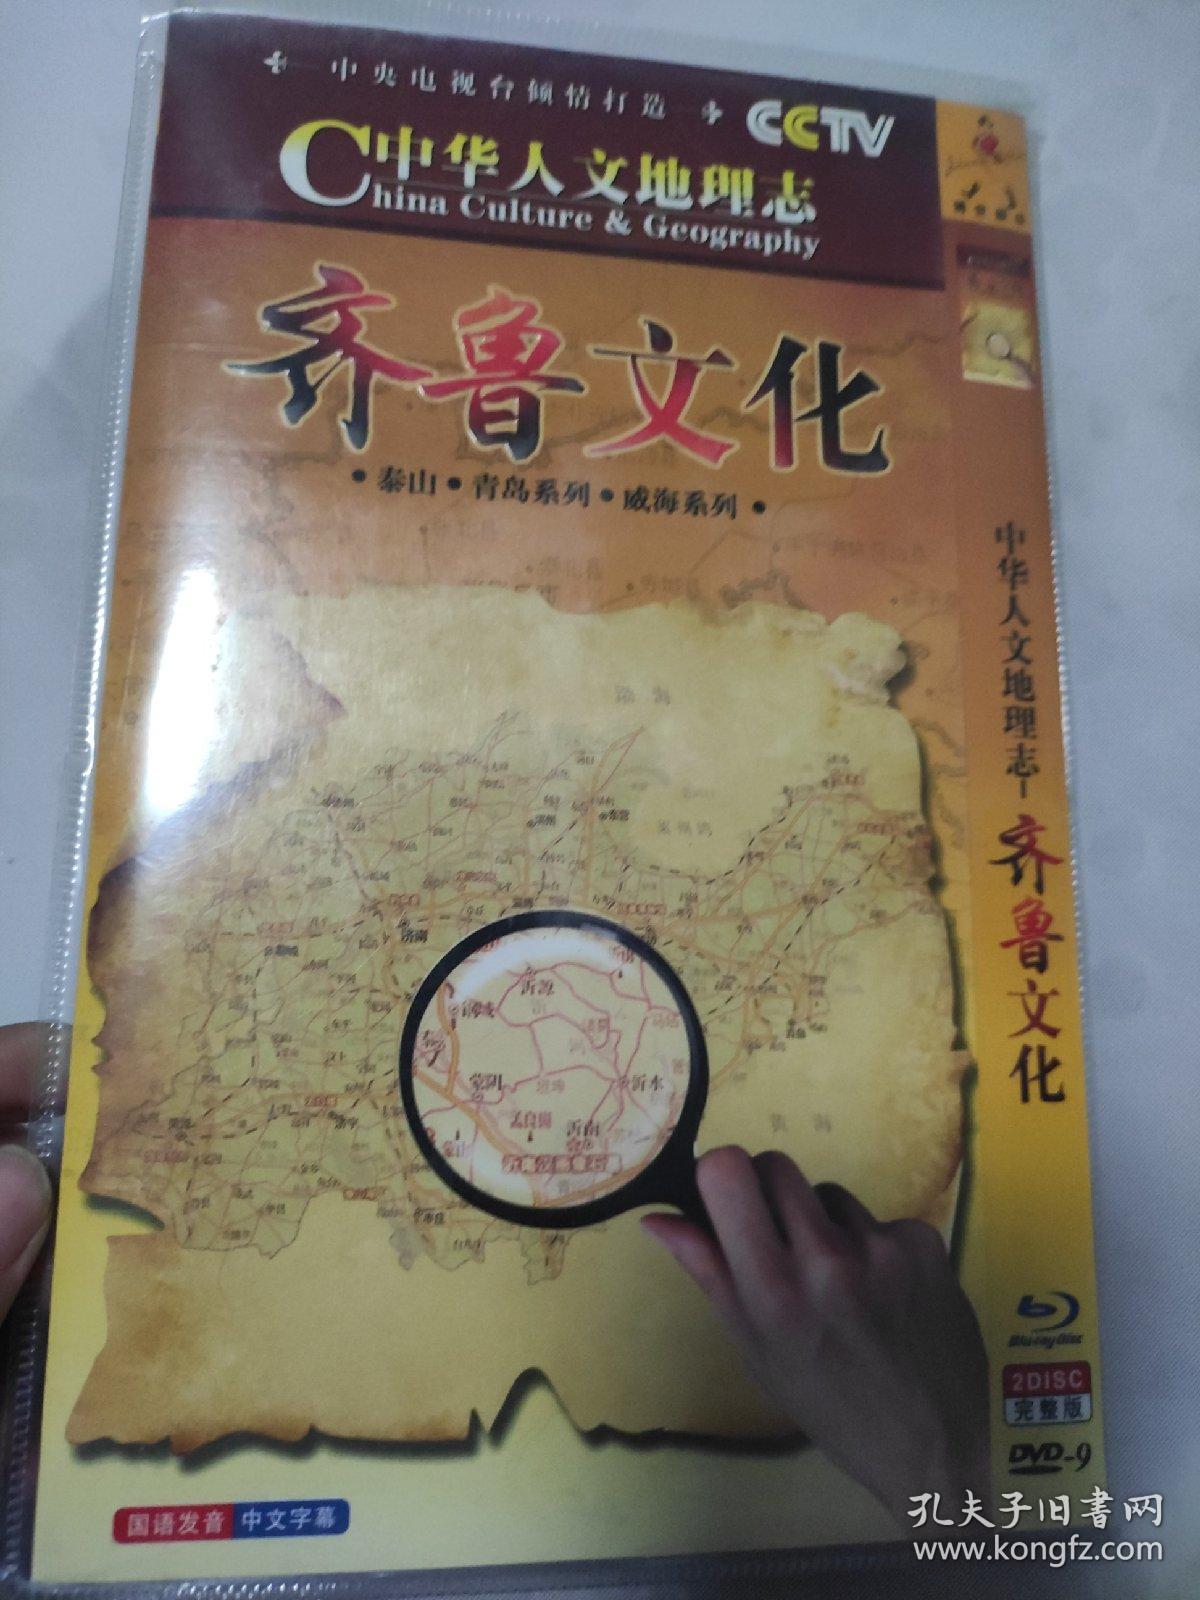 中华人文地理志齐鲁文化DVD